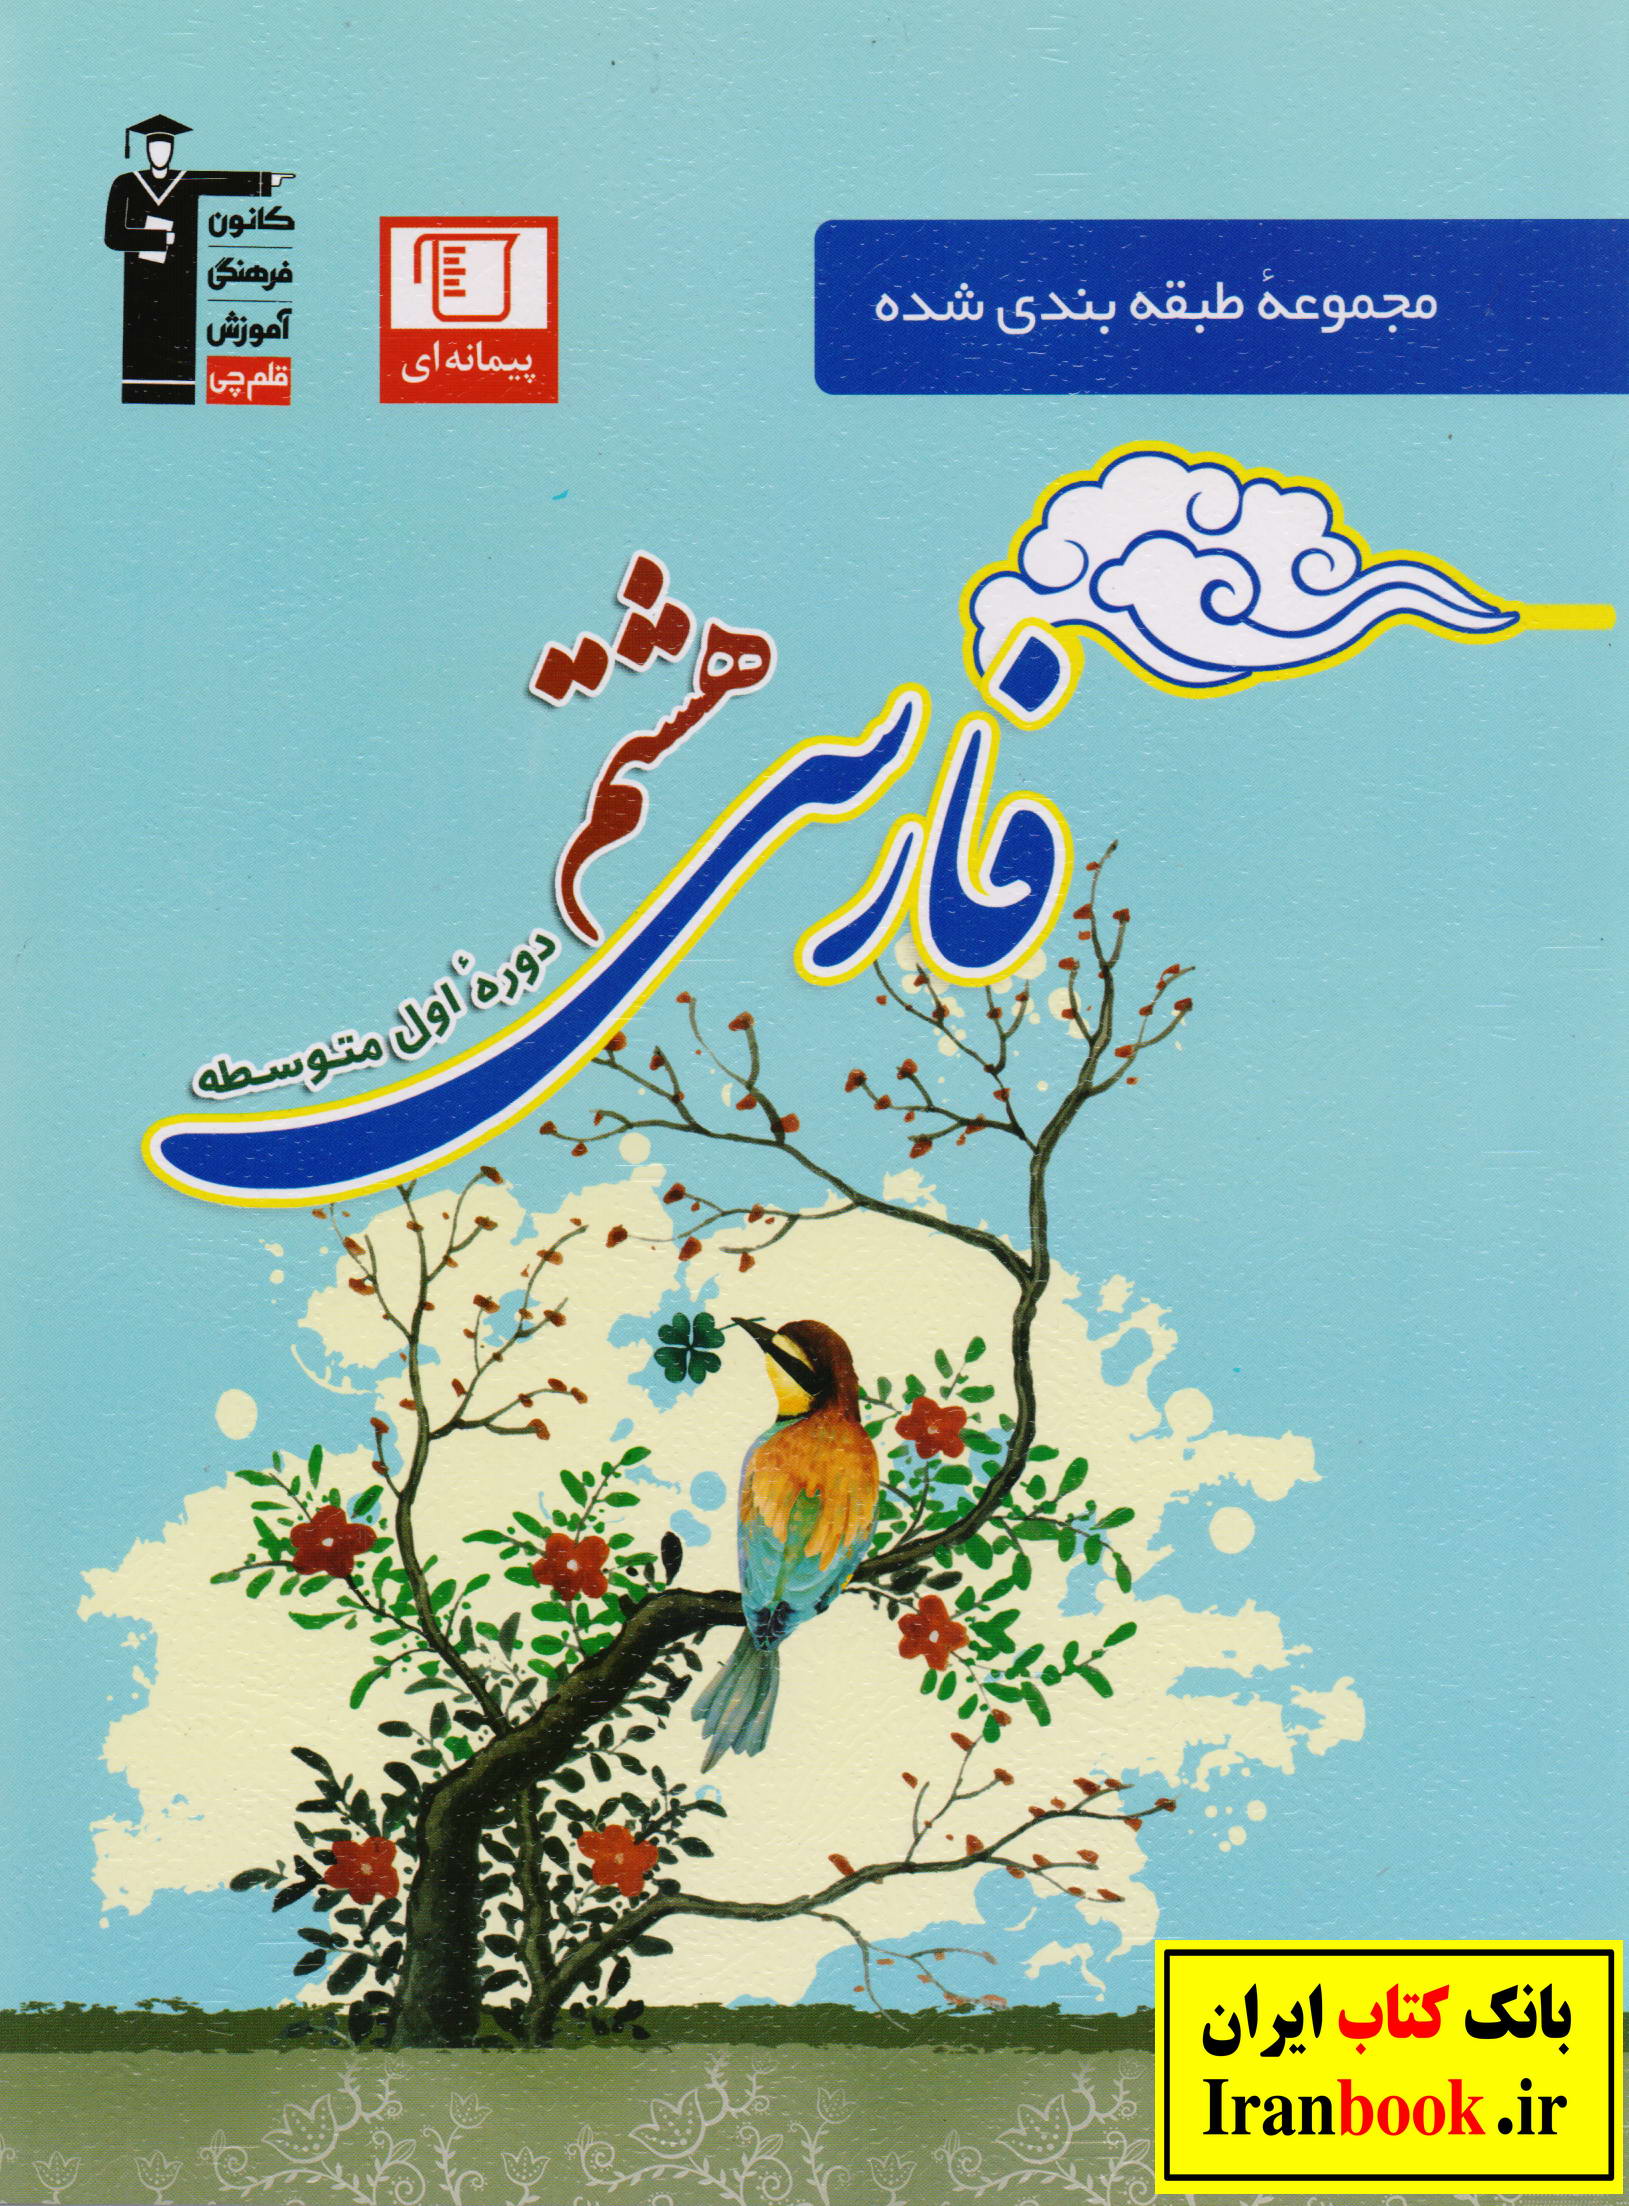 مجموعه طبقه بندی شده فارسی هشتم انتشارات قلم چی